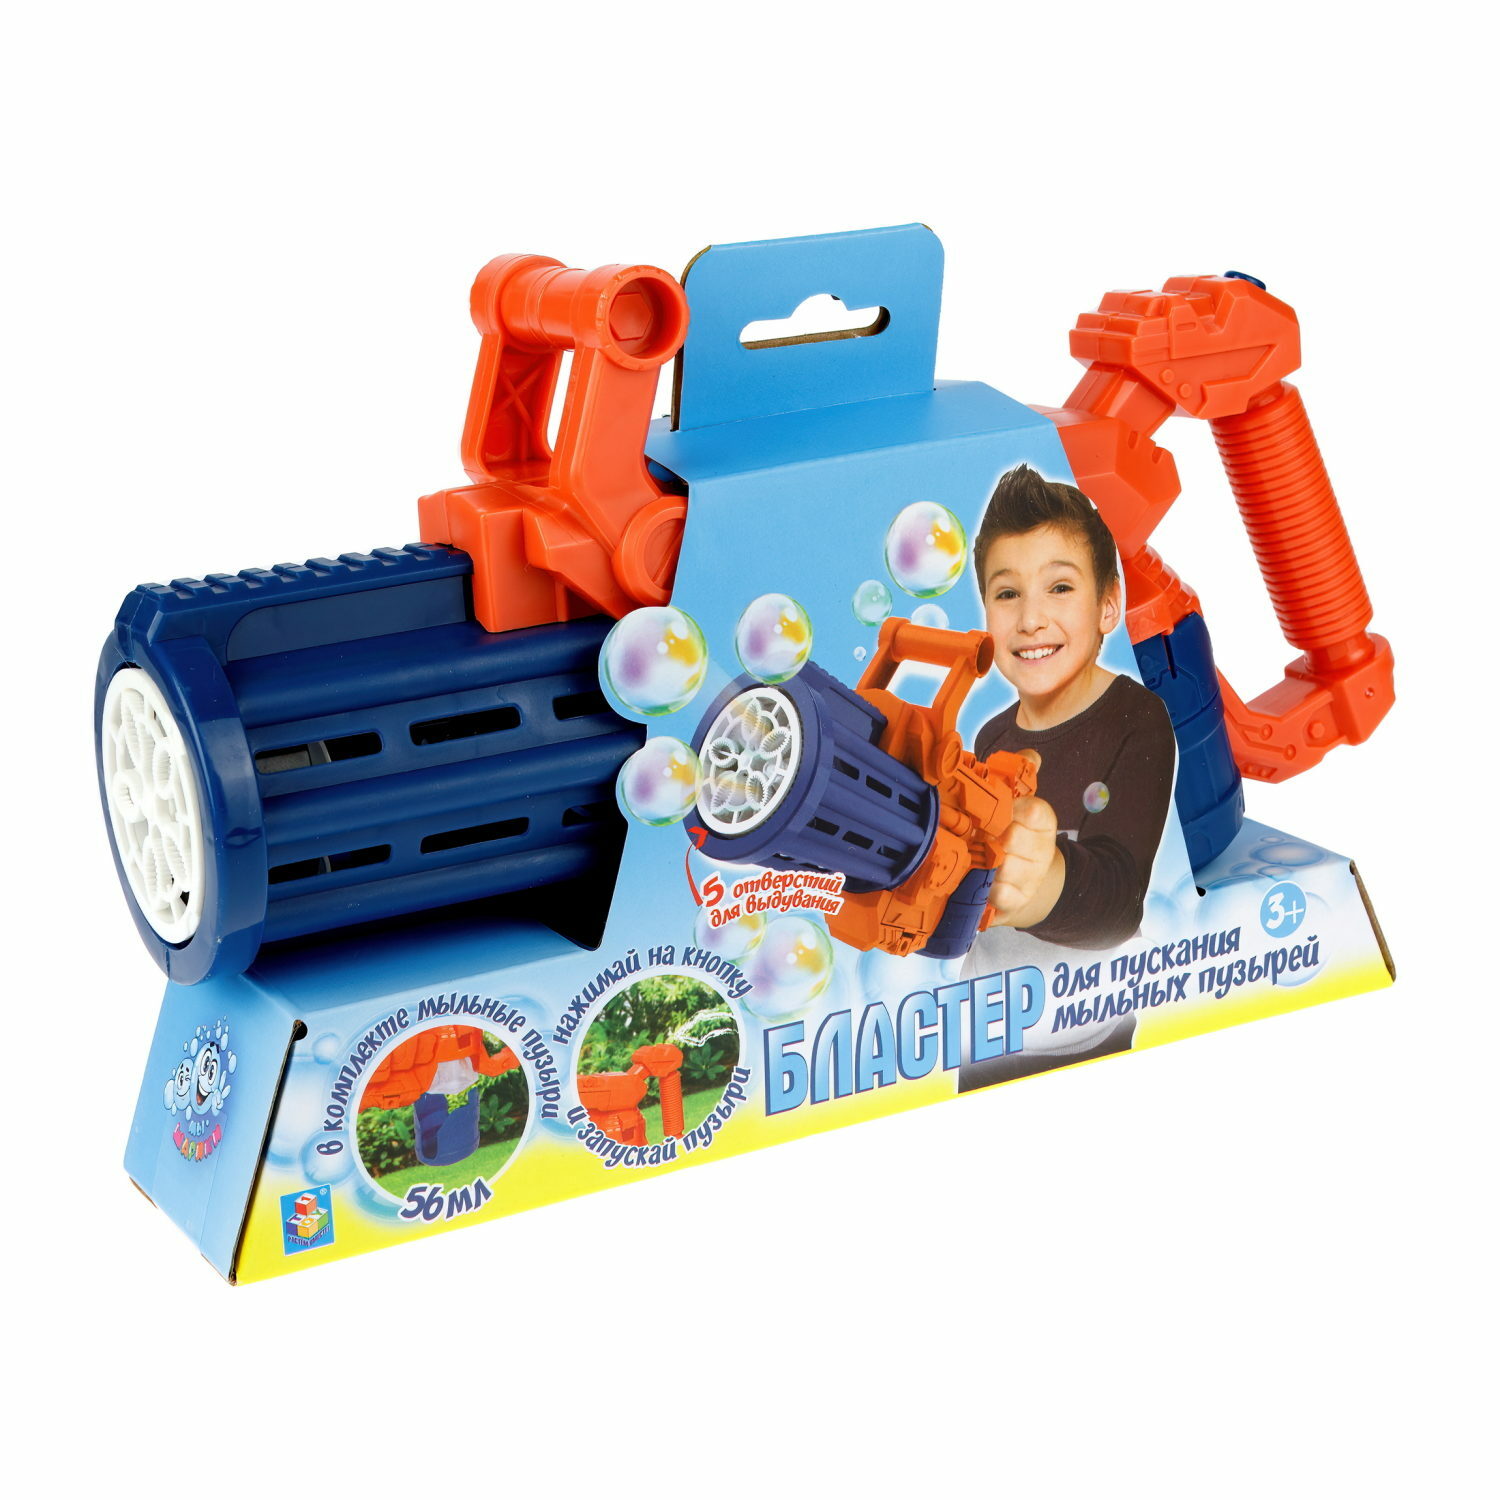 Мыльные пузыри пистолет Мы-шарики 1YOY игрушки для мальчика генератор миниган базука бластер - фото 1